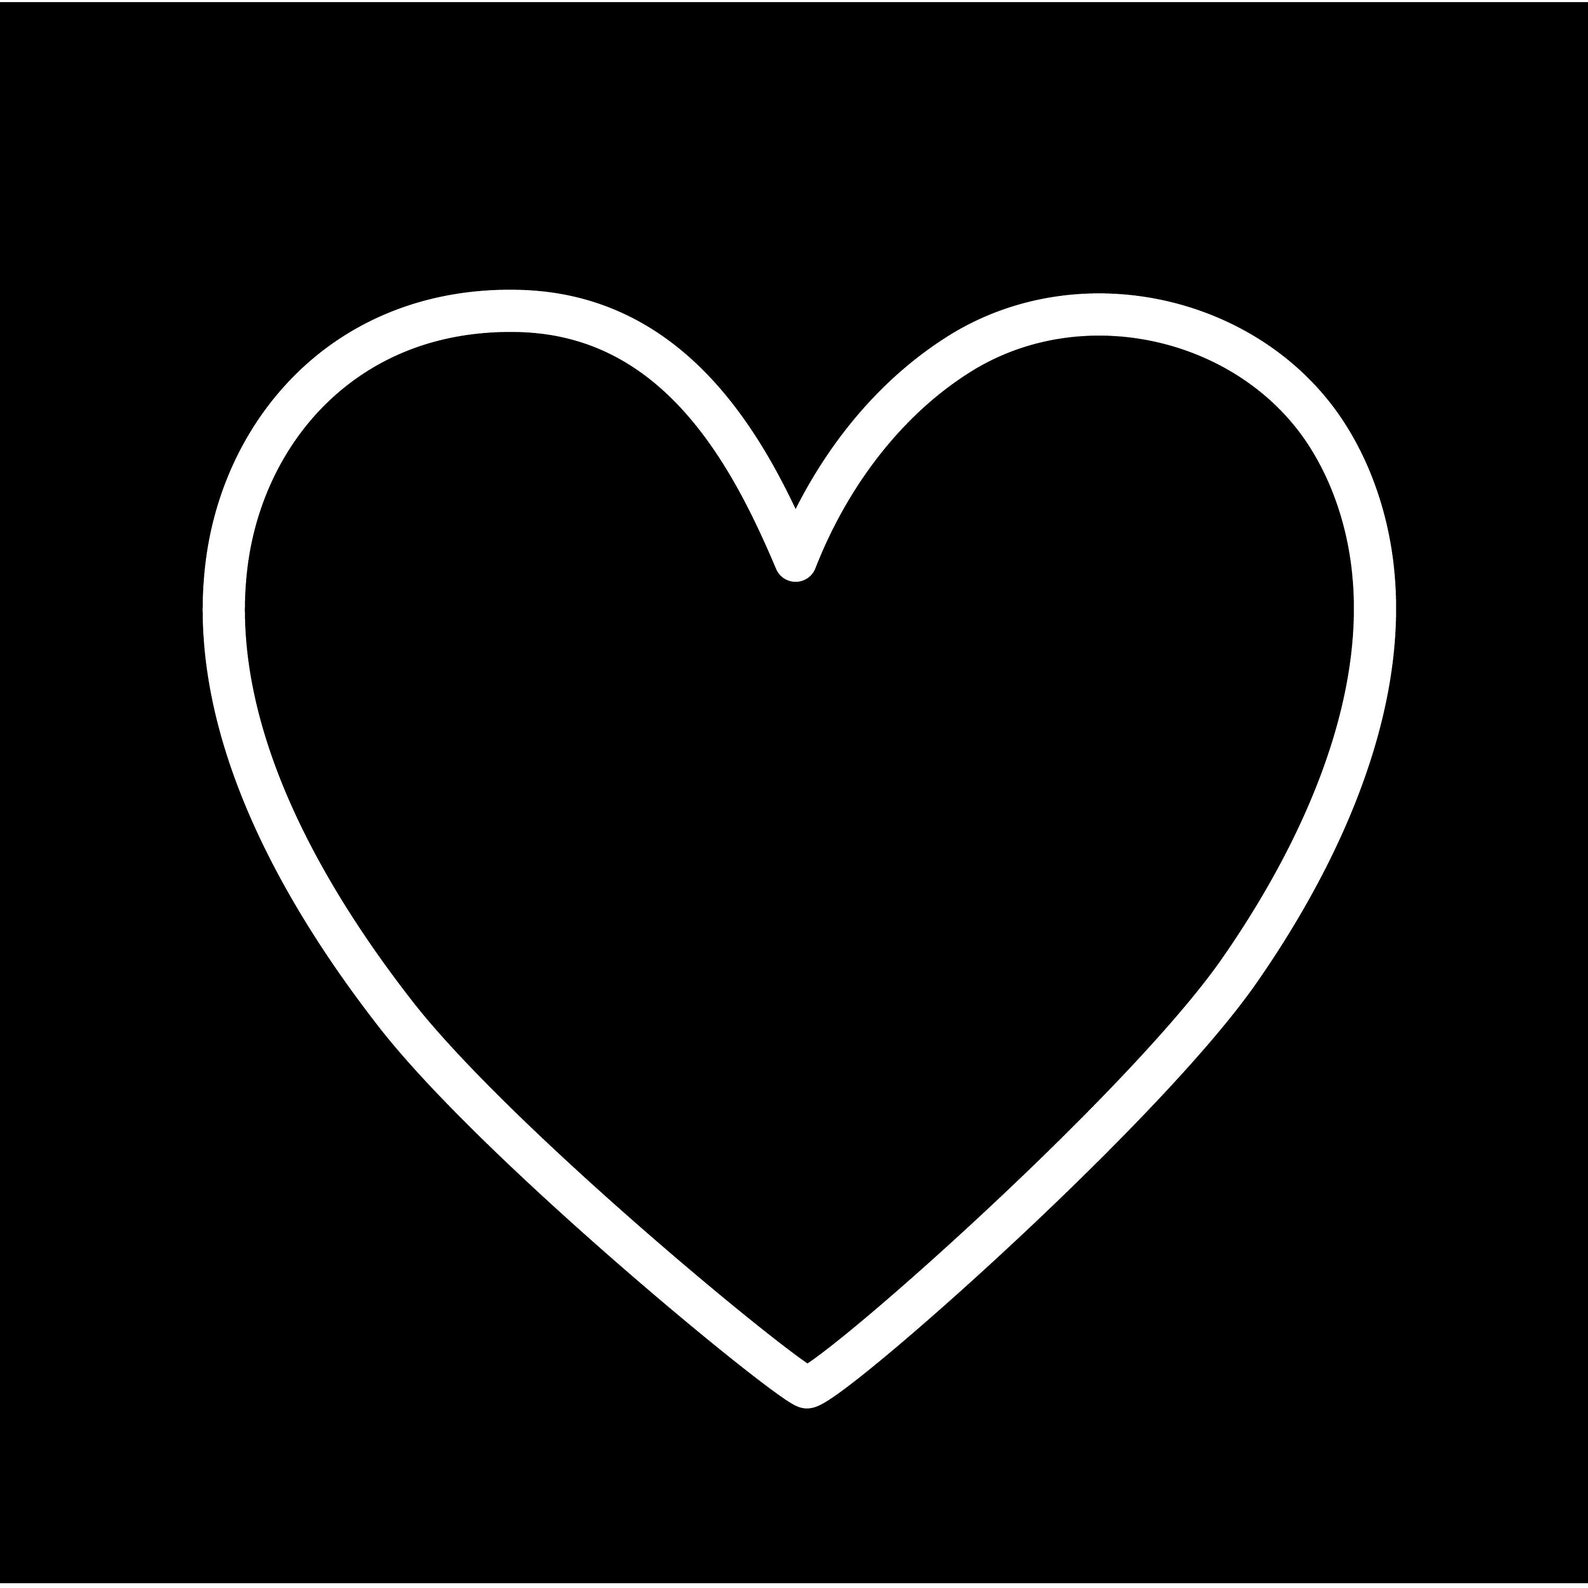 Black & White HEART OUTLINE SVG Instant Digital Download, Simple Black ...